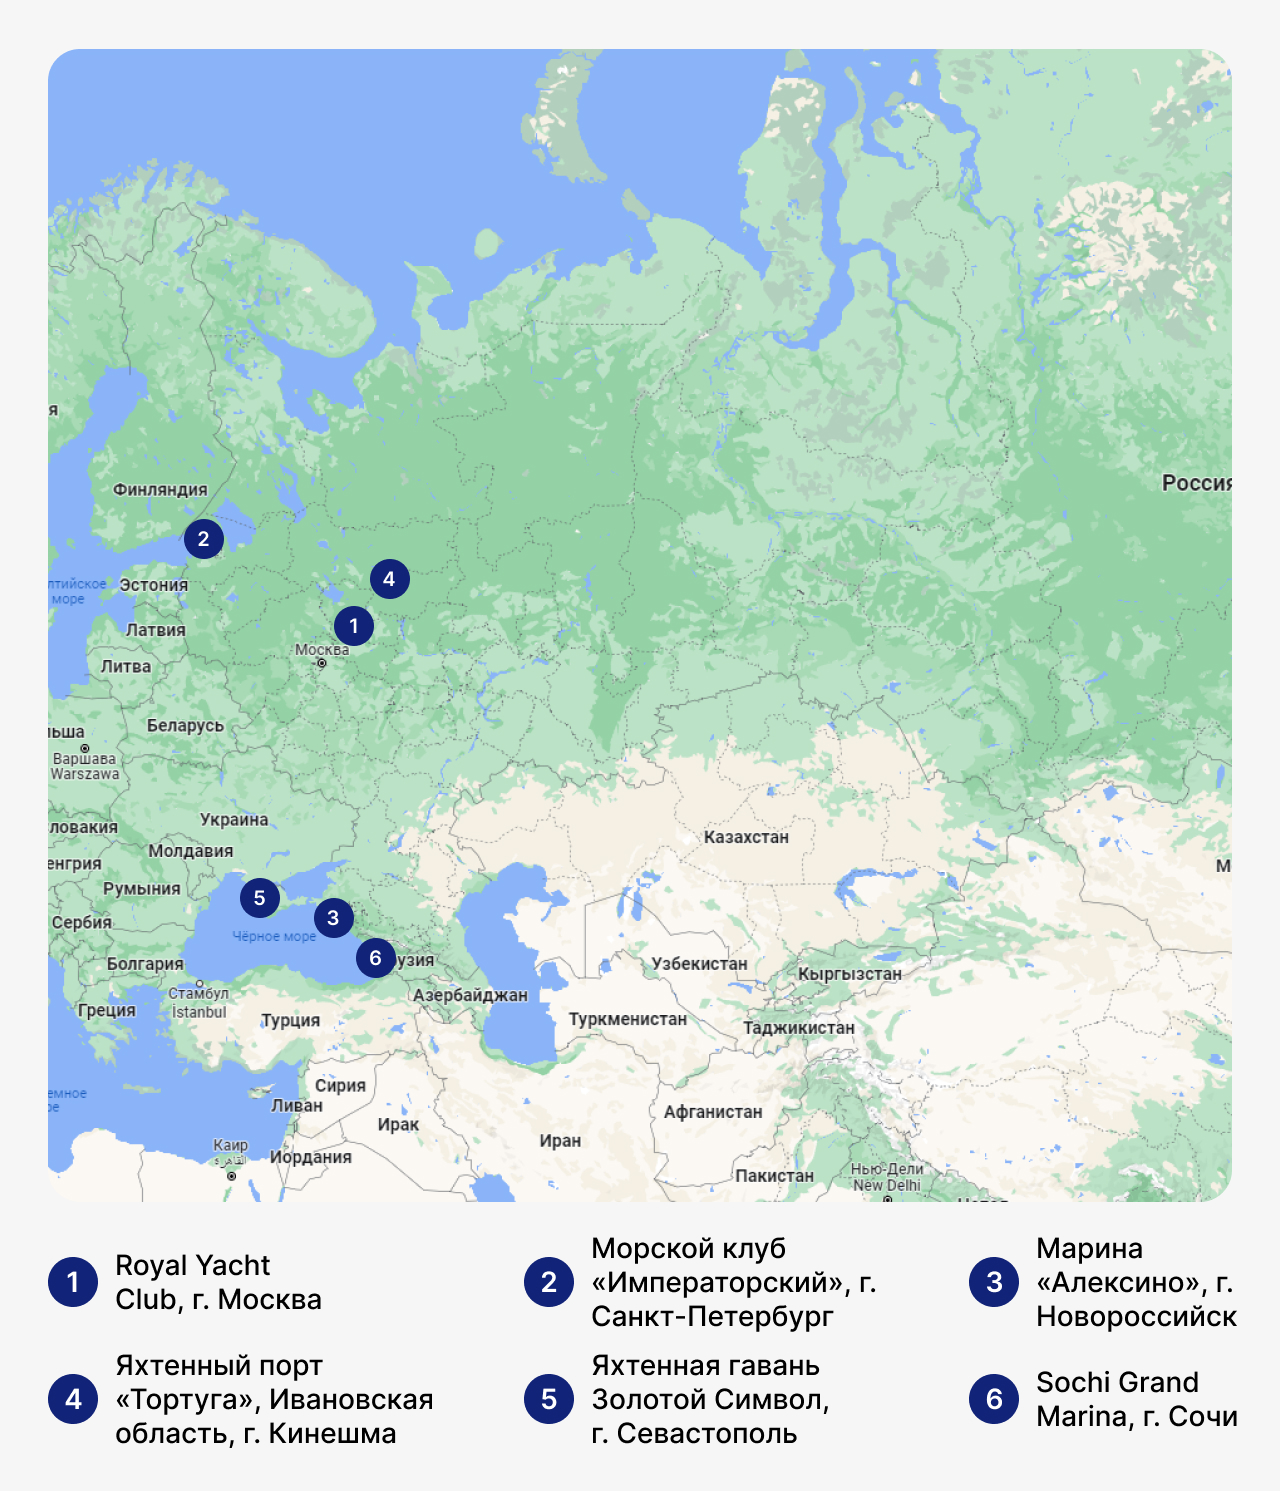 Лучшие марины в России, карта России с маринами, стоянка для яхт в России, где хранить яхты в России